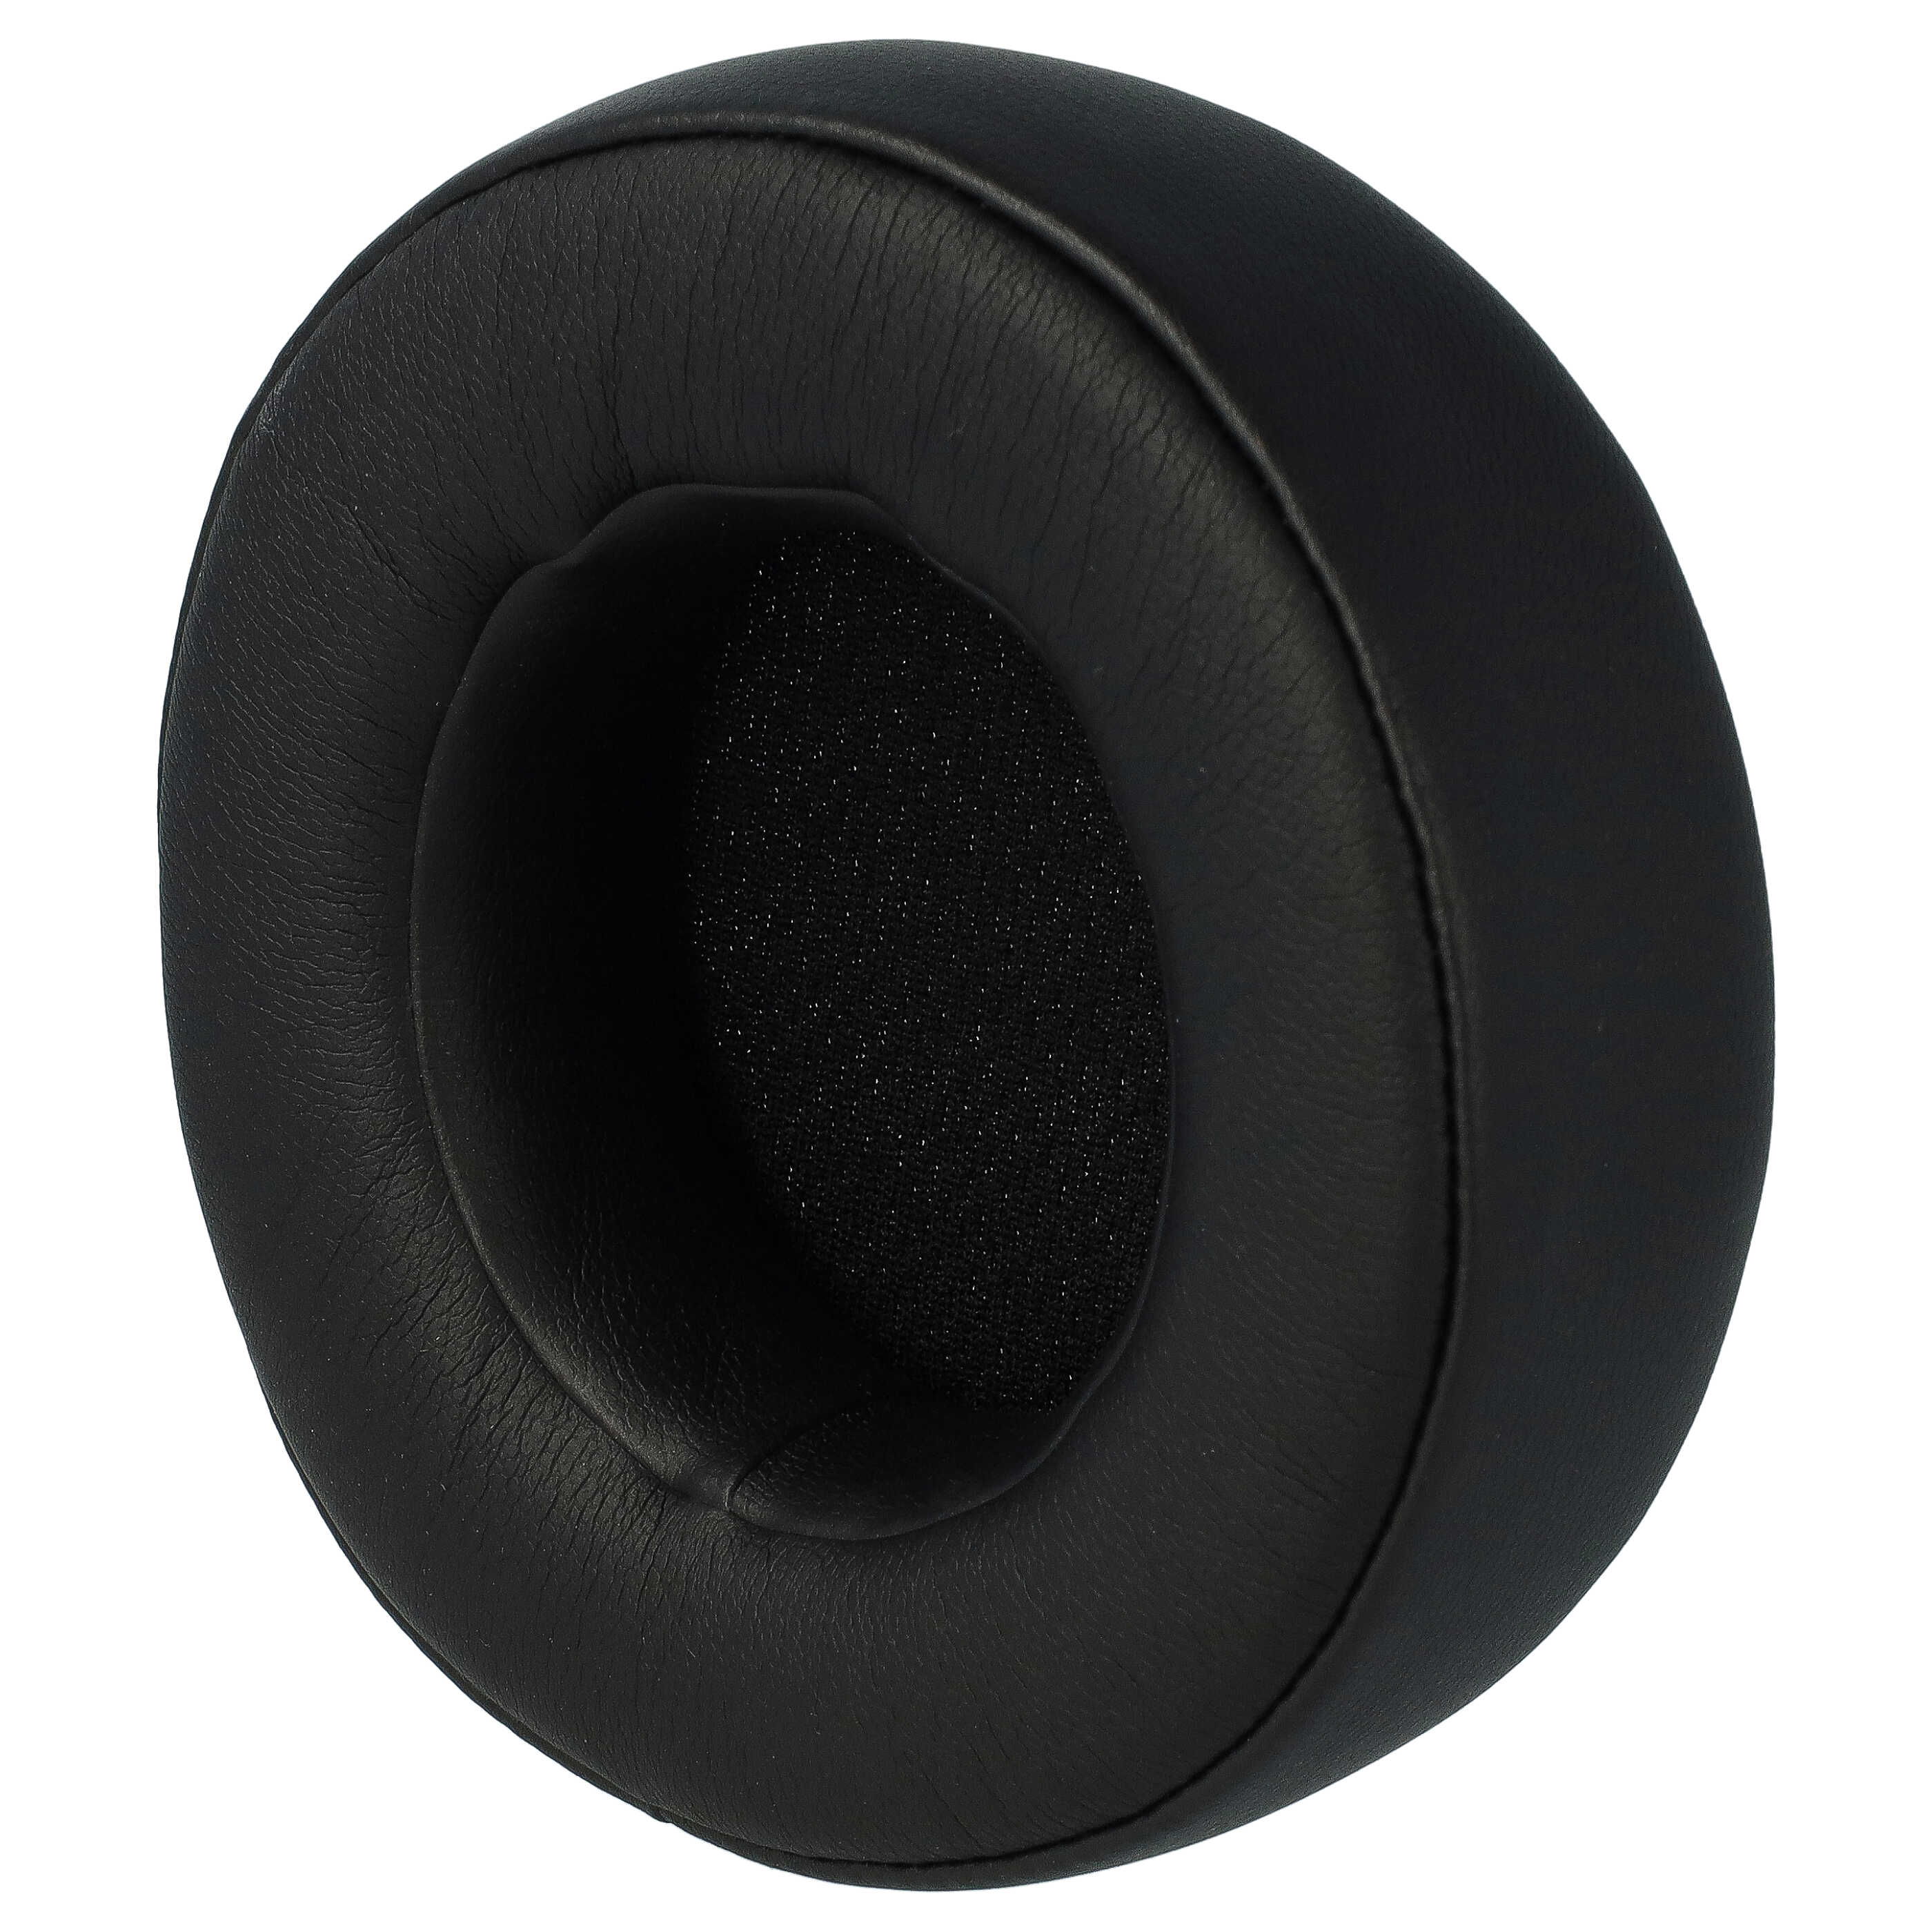 Poduszki do słuchawek Corsair Virtuoso RGB Wireless SE - pady miękkie, grub. 52 mm, czarny